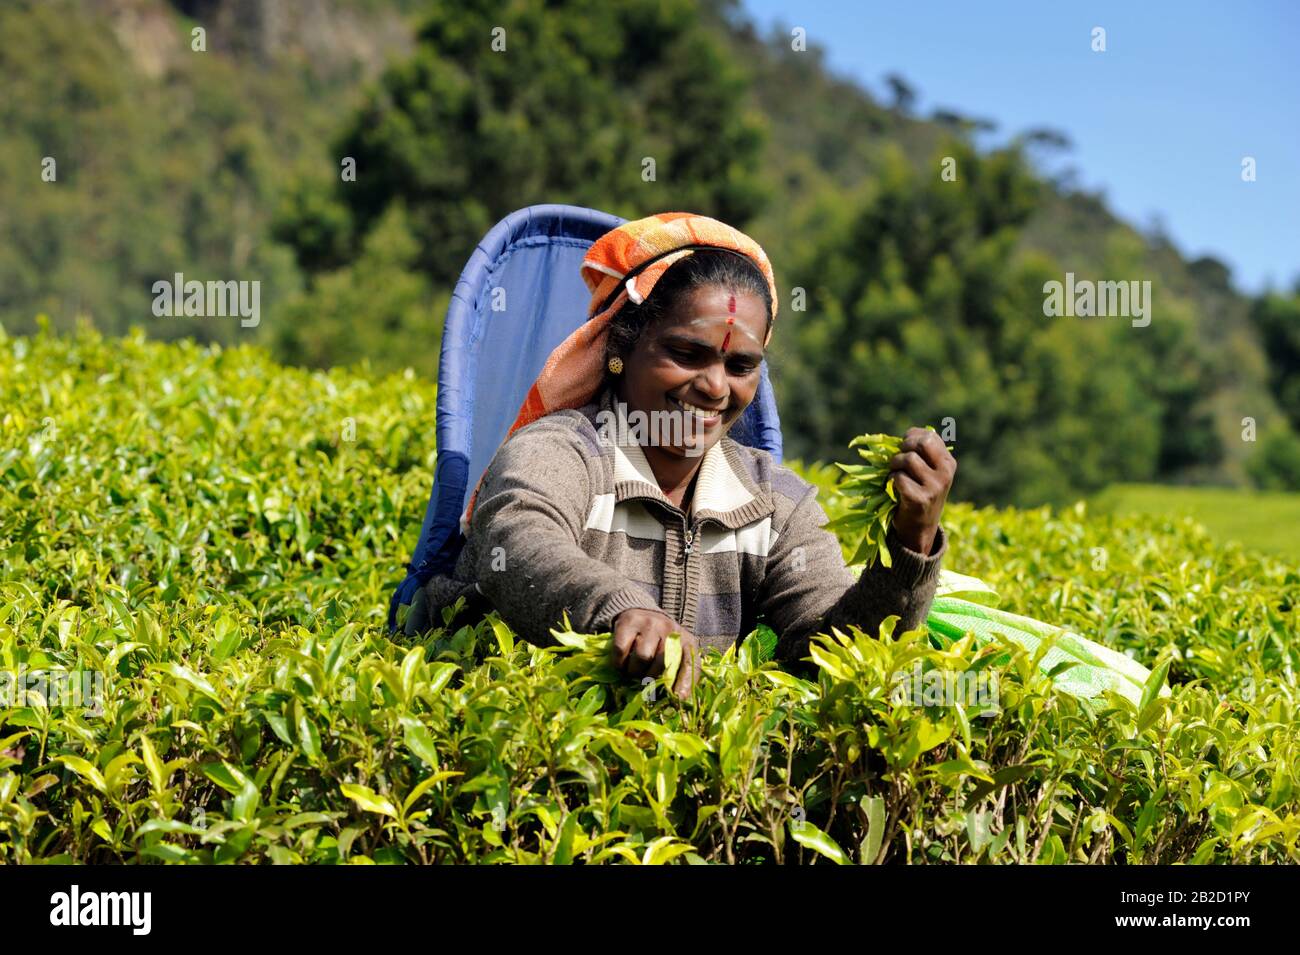 Sri Lanka, Nuwara Eliya, tea plantation, tamil woman plucking tea leaves Stock Photo